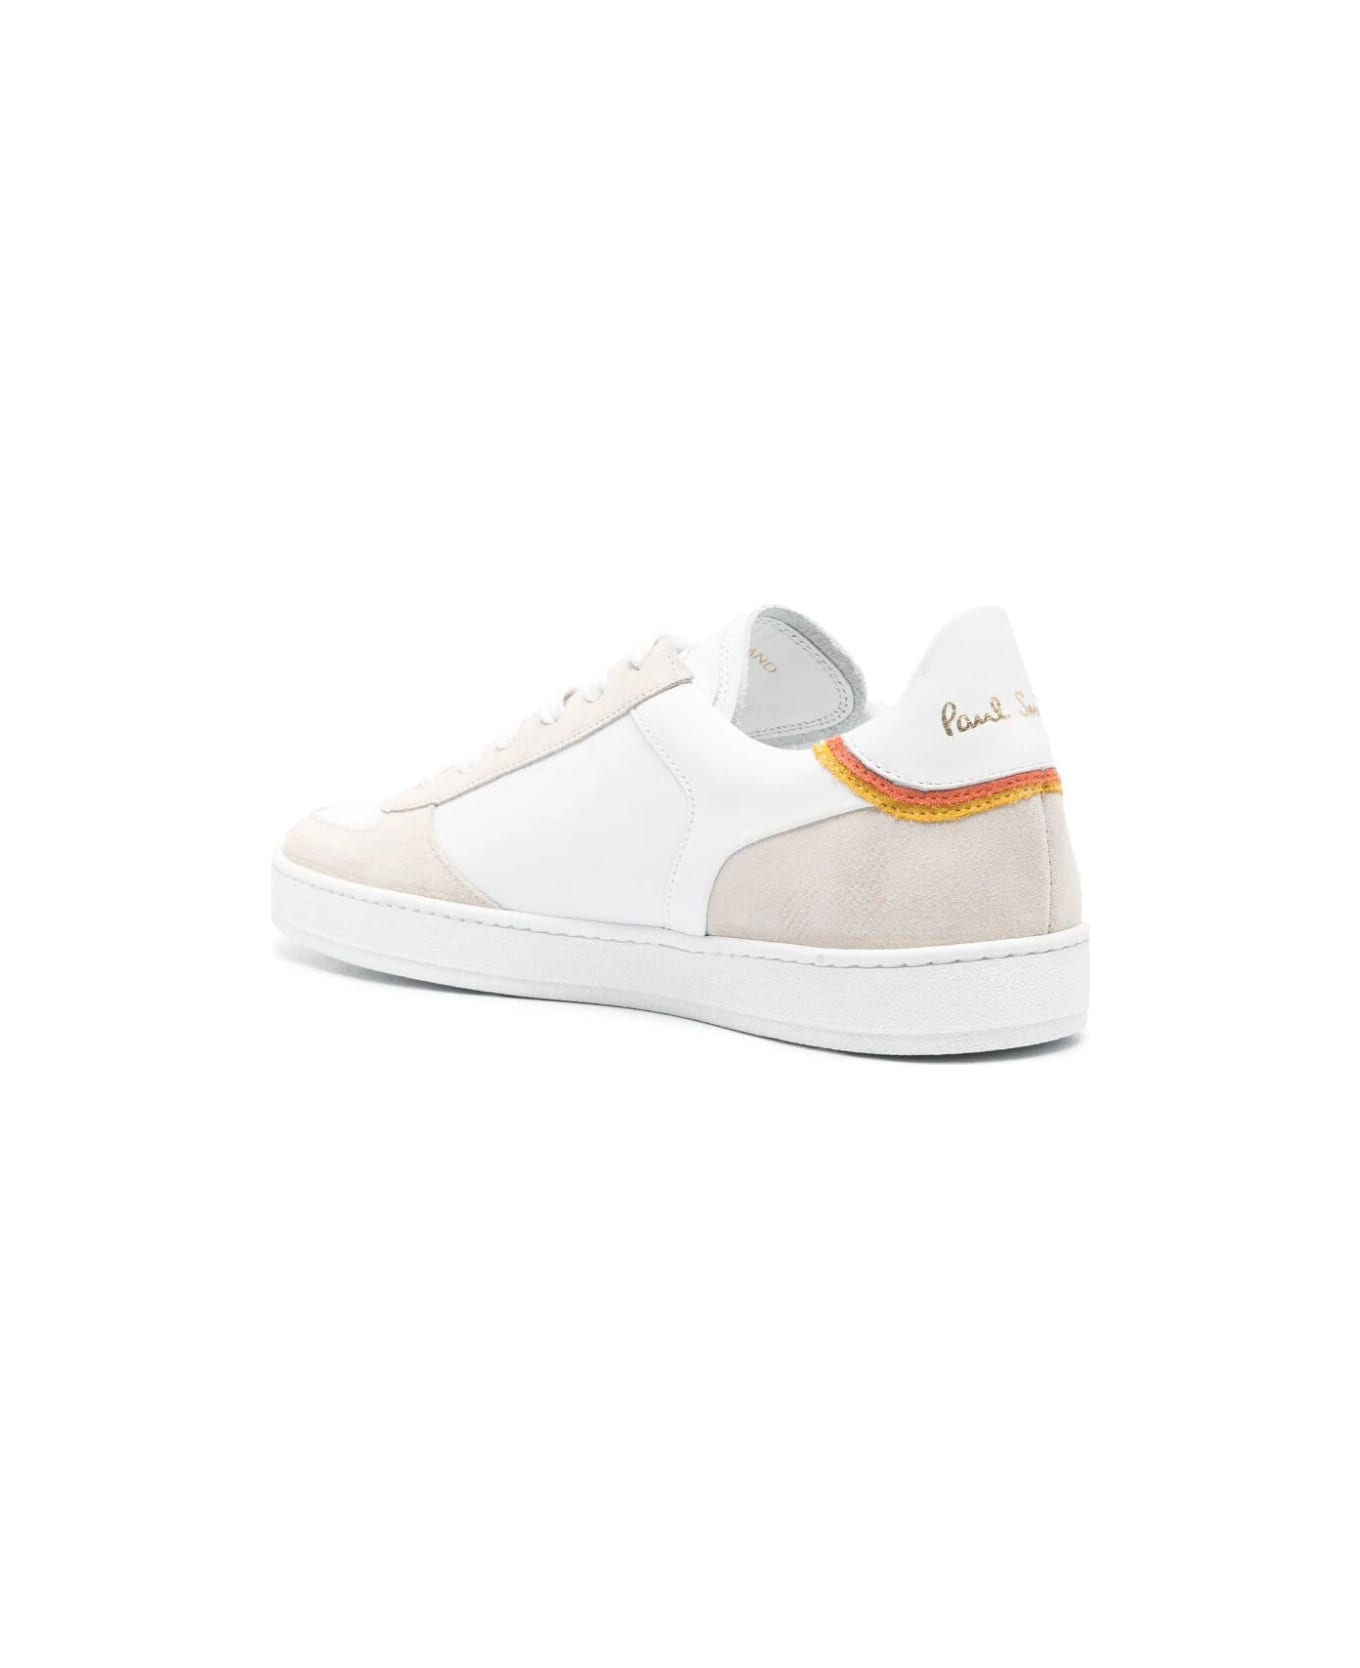 Paul Smith Mens Shoe Destry White - Whites スニーカー